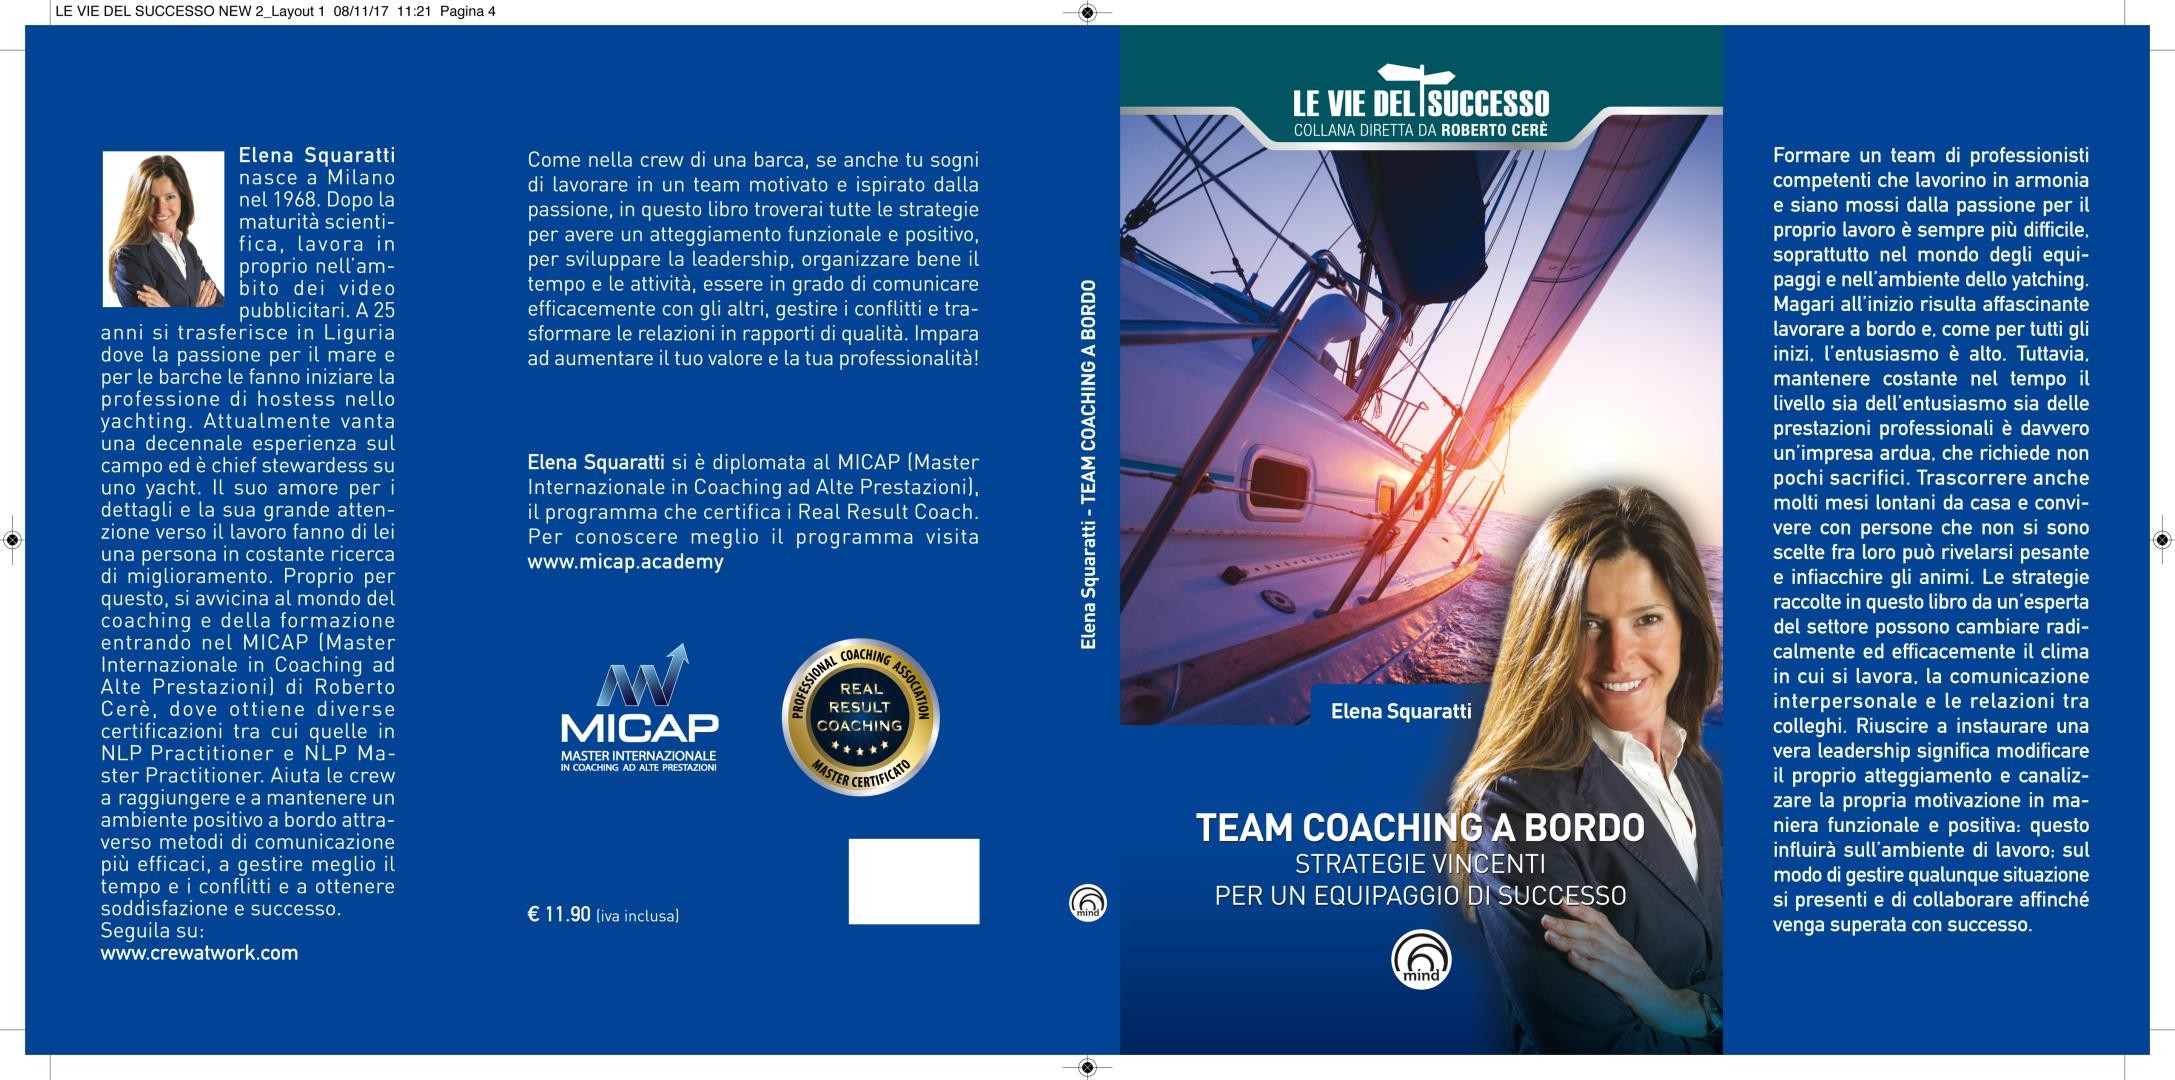 La cover del libro 'Team Coaching a Bordo' di Elena Squaratti